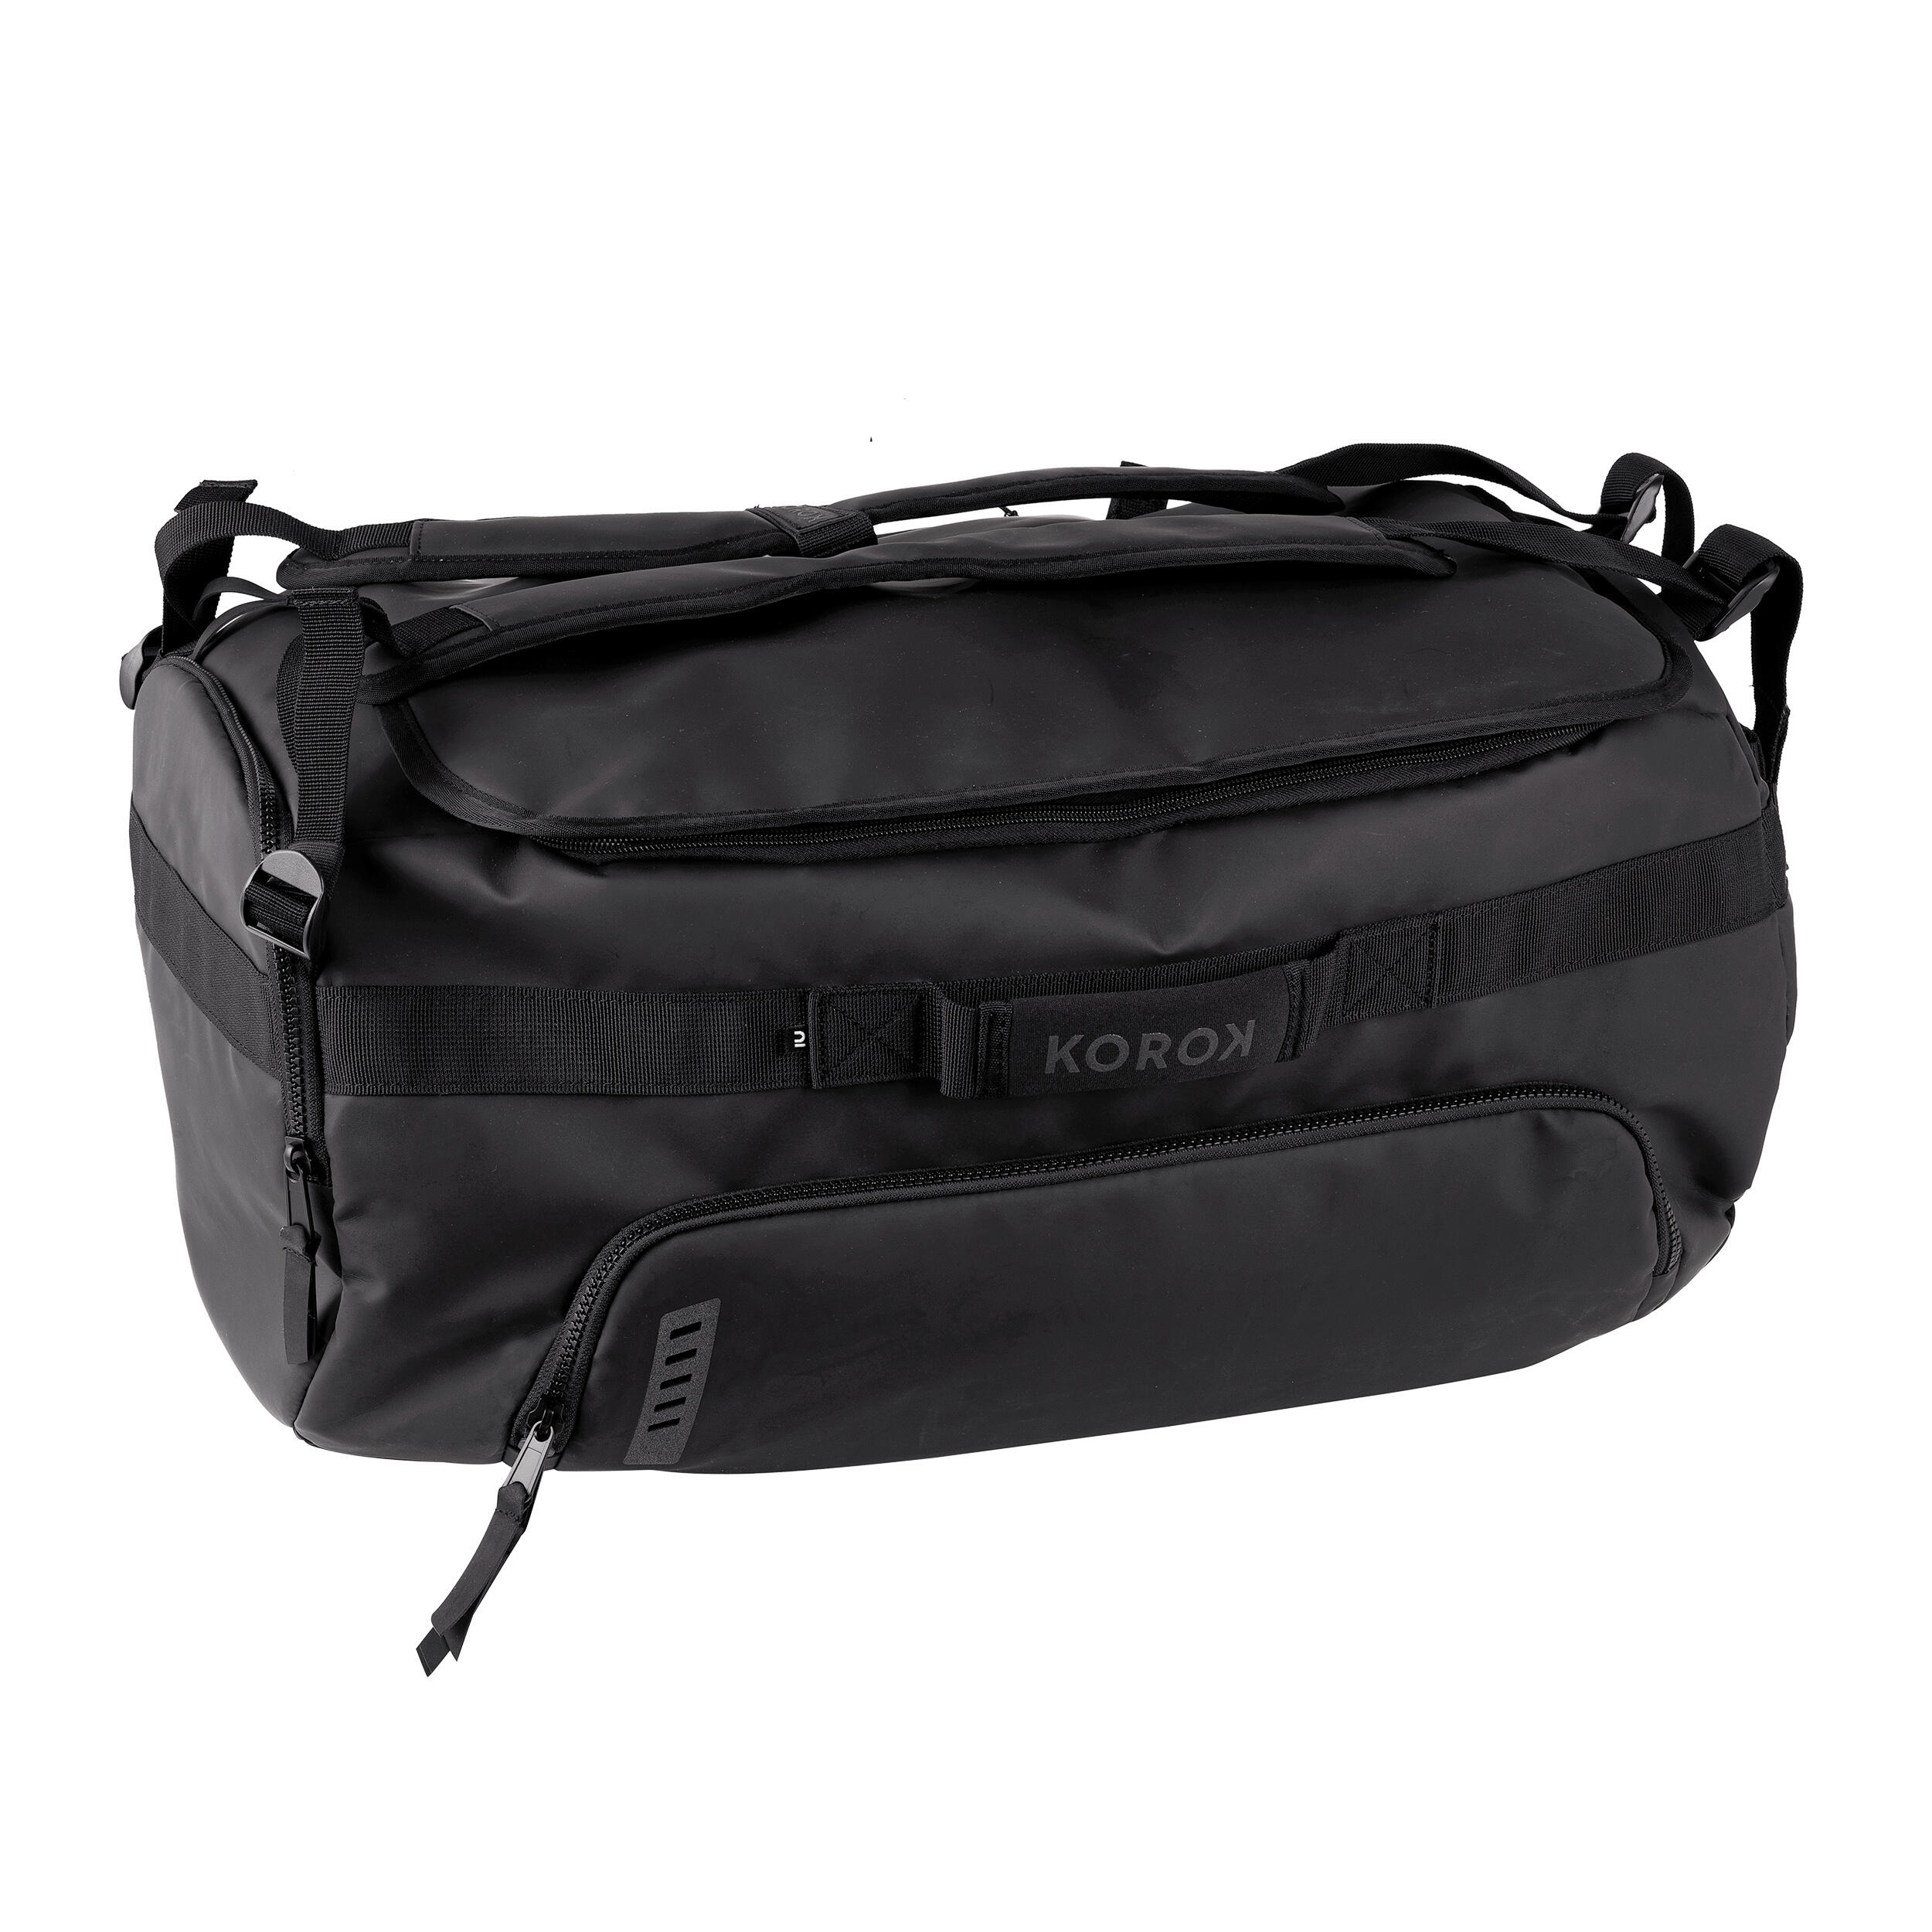 Field Hockey Duffel Bag FH900 - Black 2/25